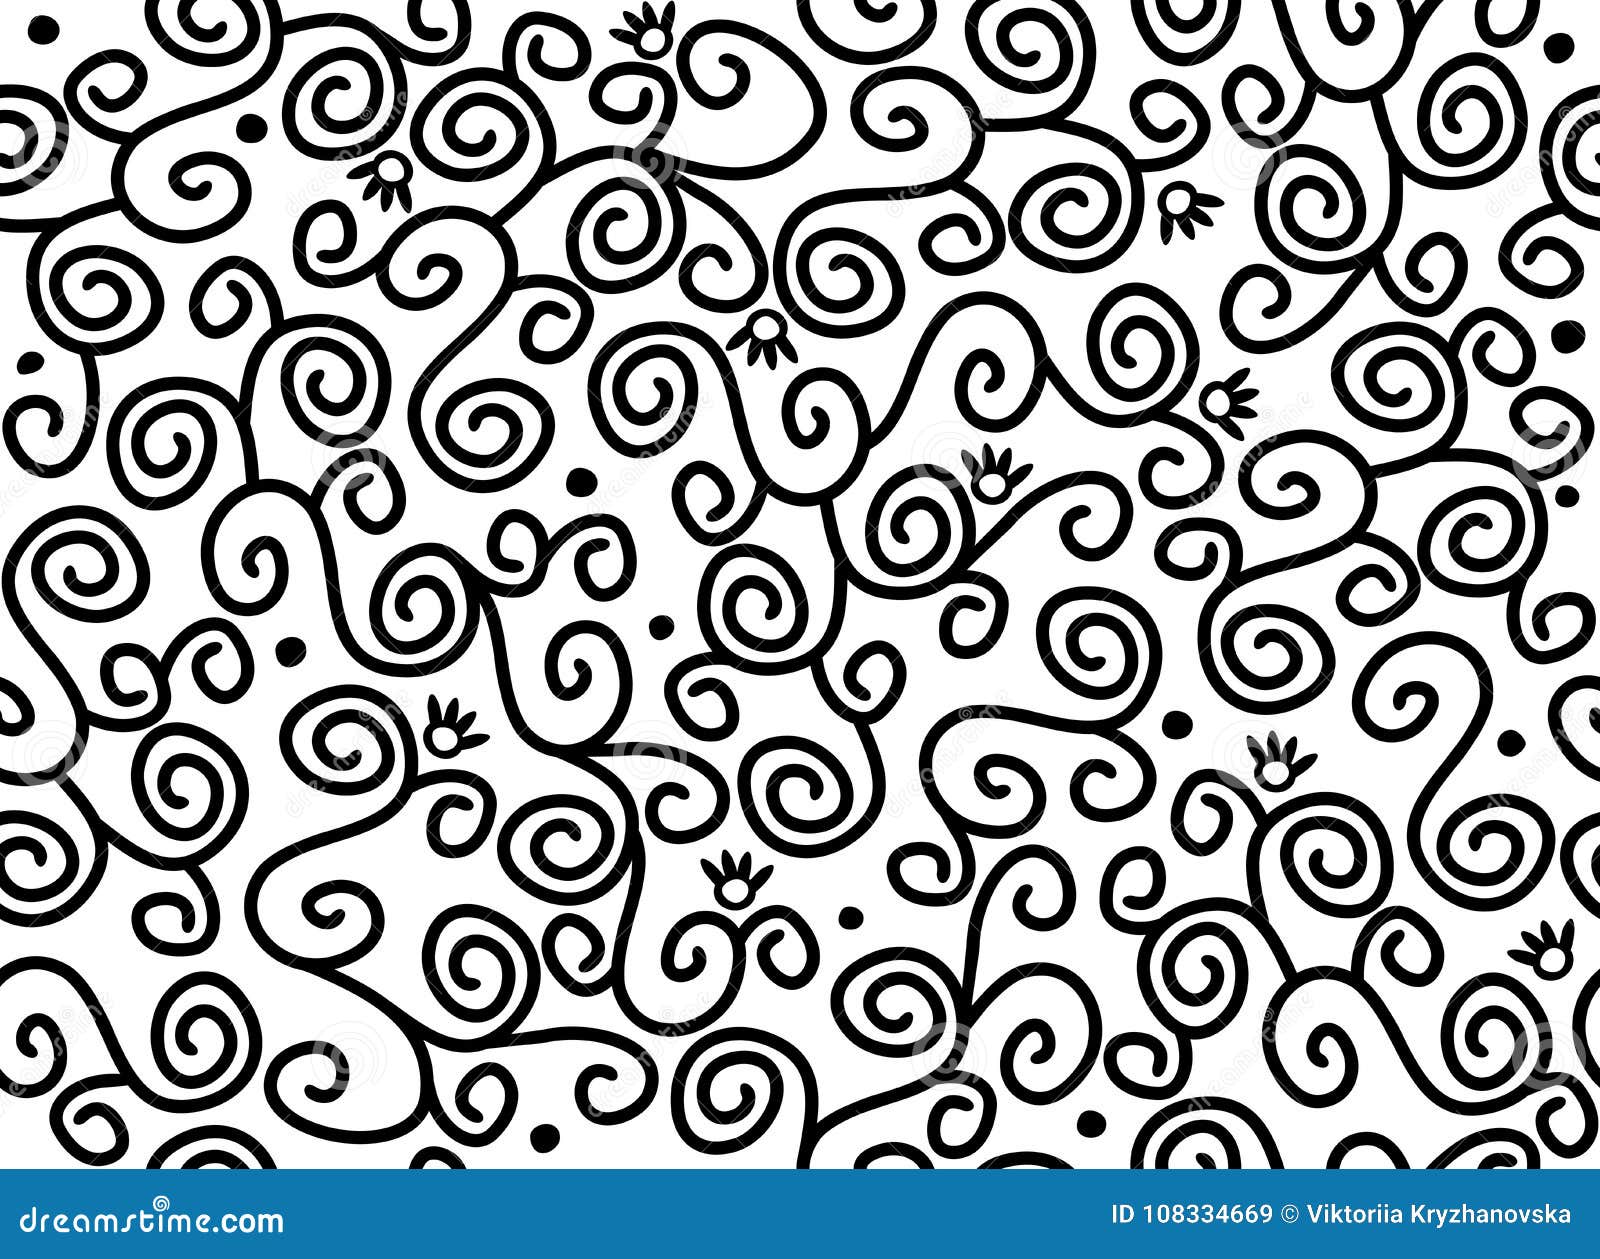 Seamless Swirl Wallpaper Vector Pattern | CartoonDealer.com #115420912